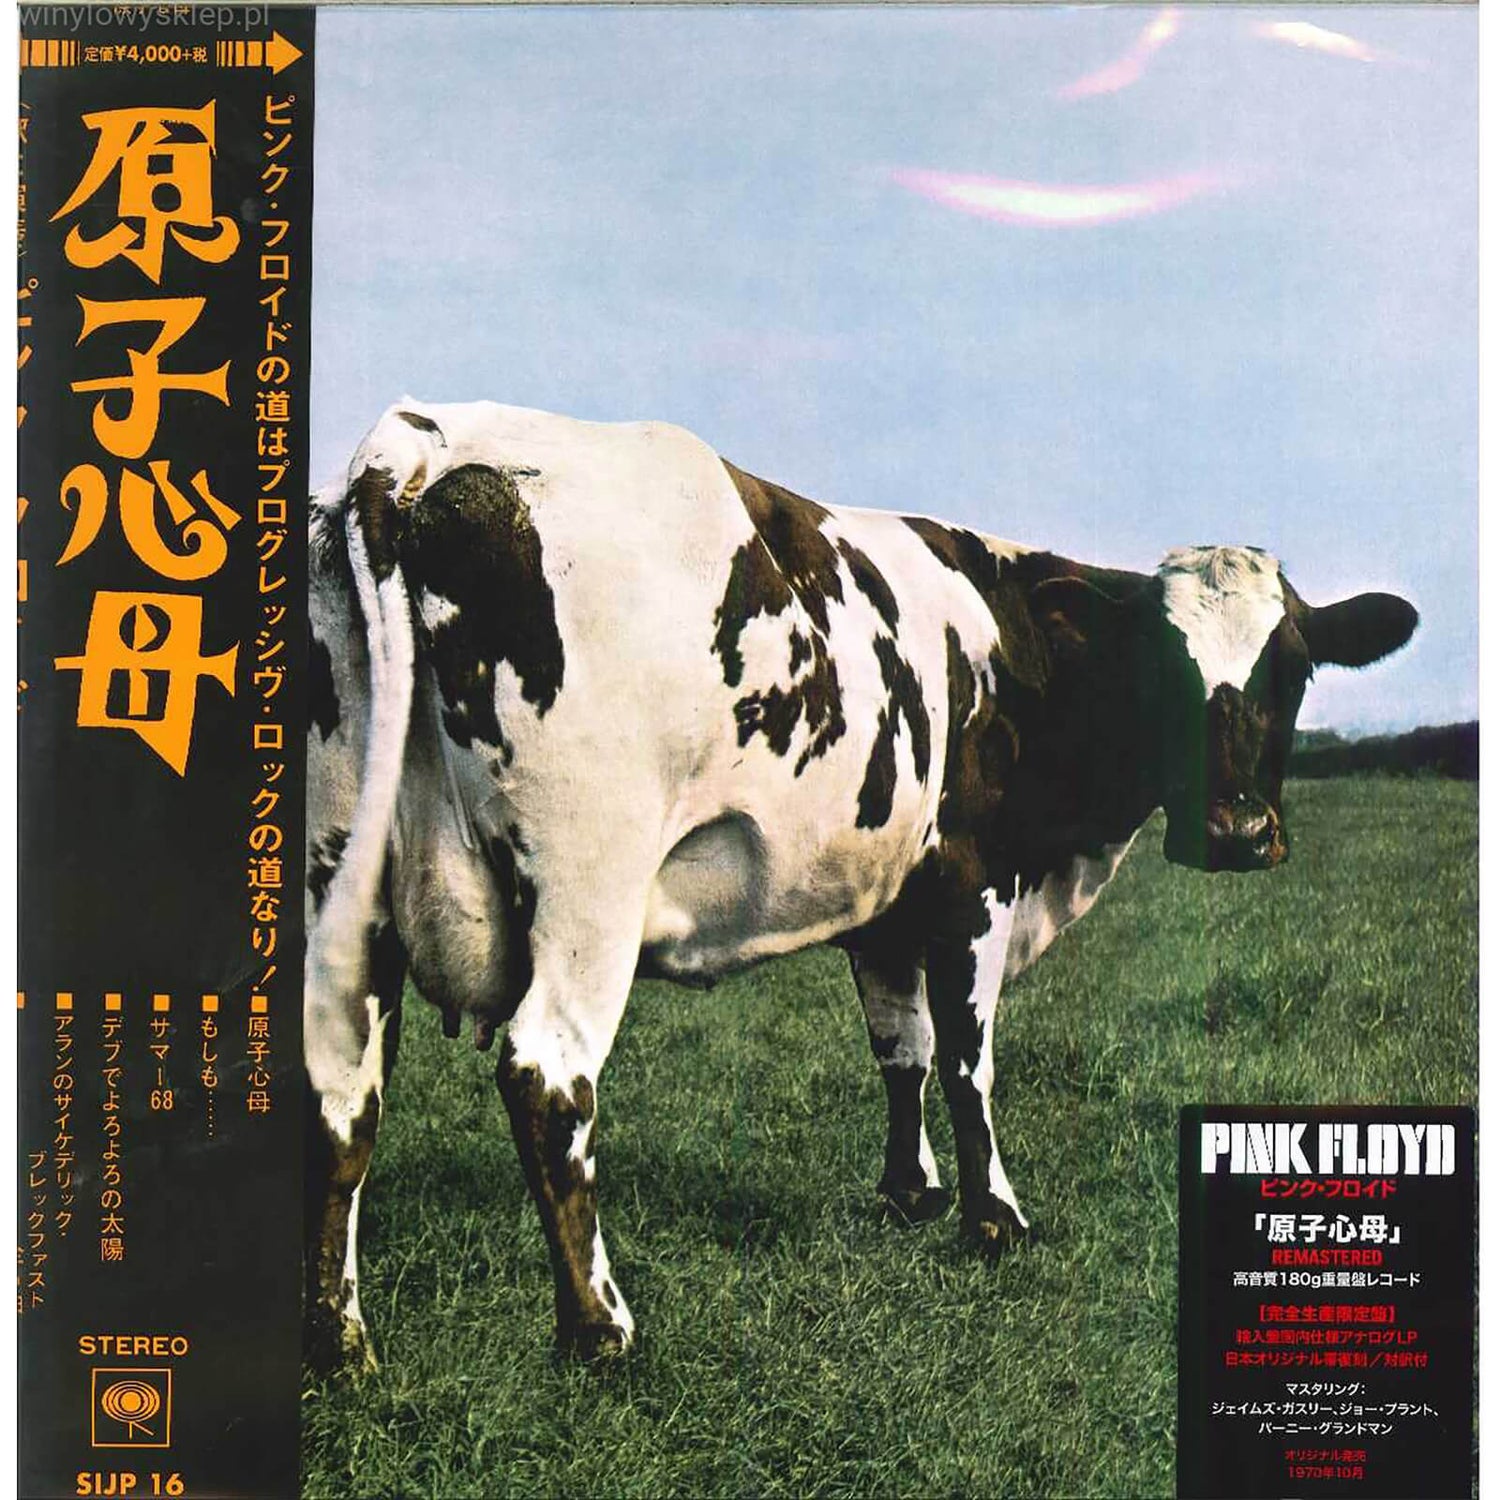 Pink Floyd - Atom Heart Mother LP Édition japonaise